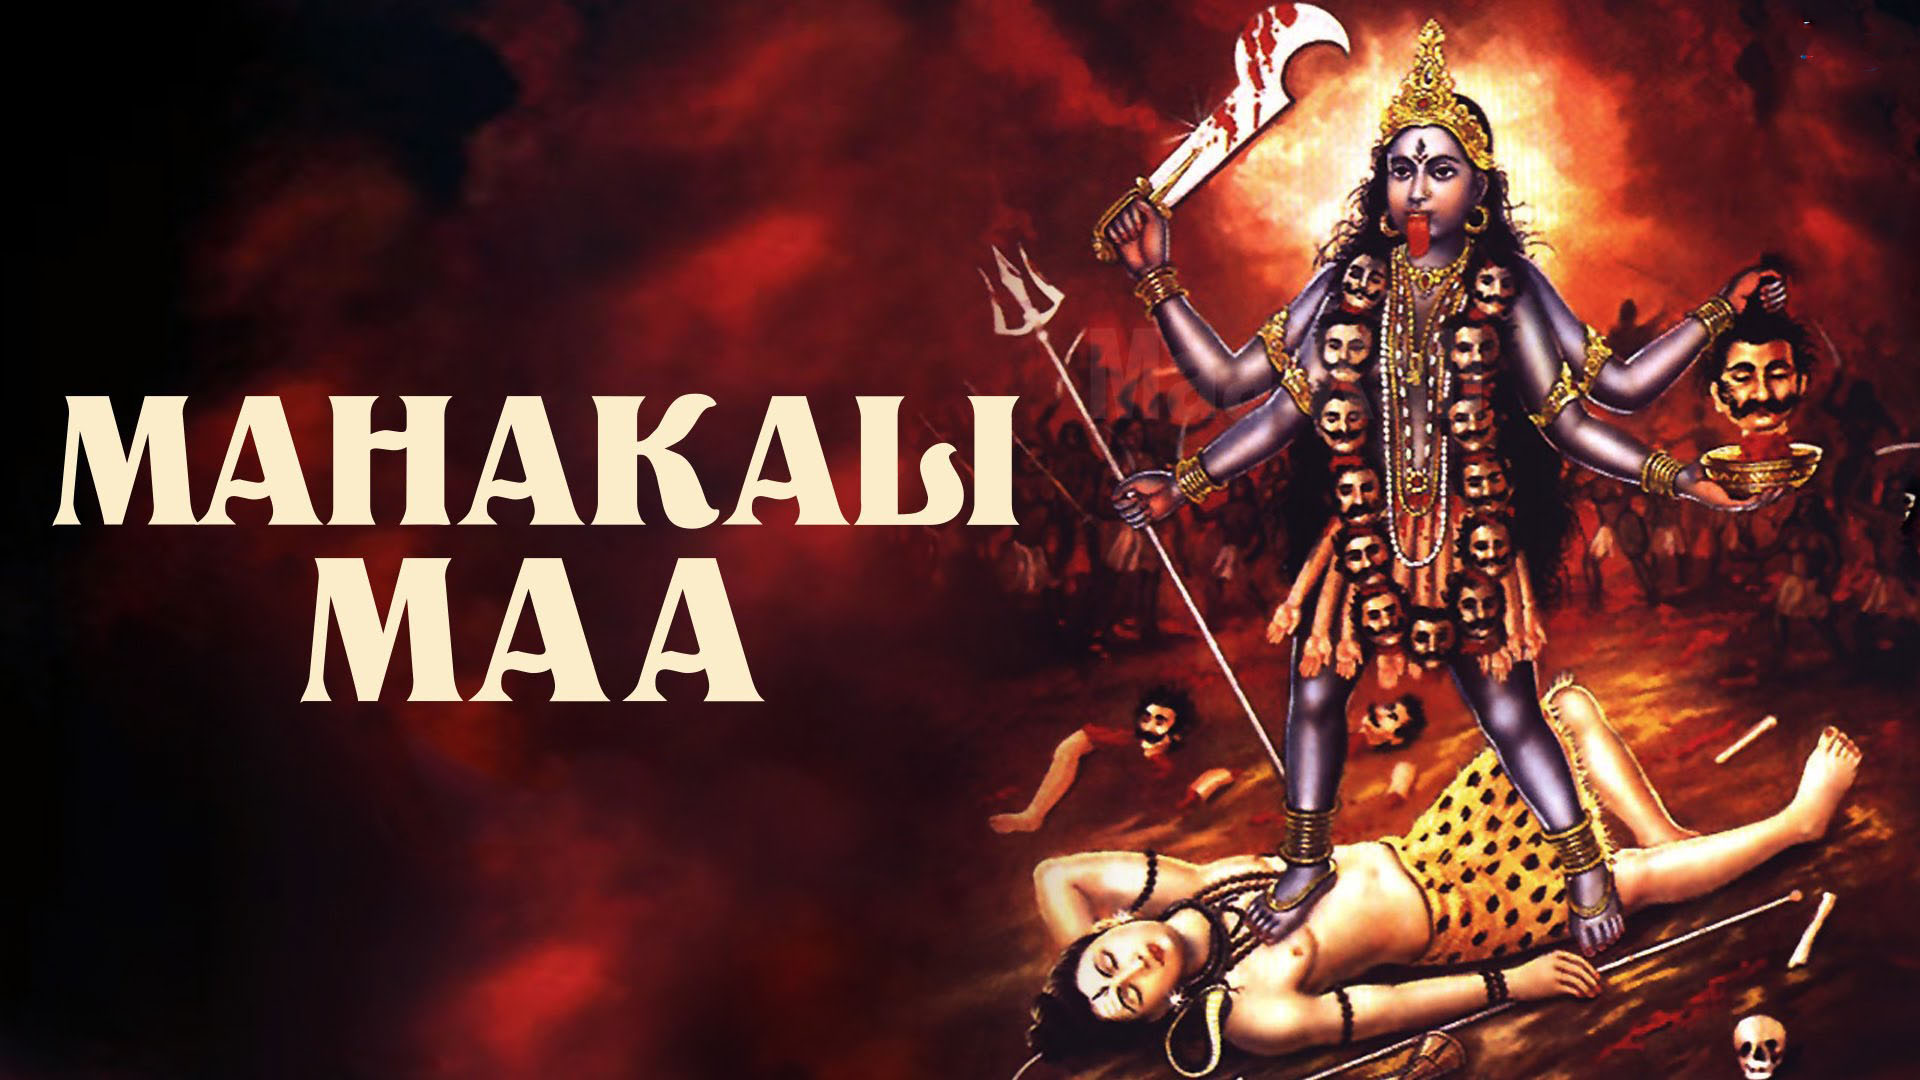 Mahakali Images Free Download - Maa Kali Song - 1920x1080 Wallpaper -  